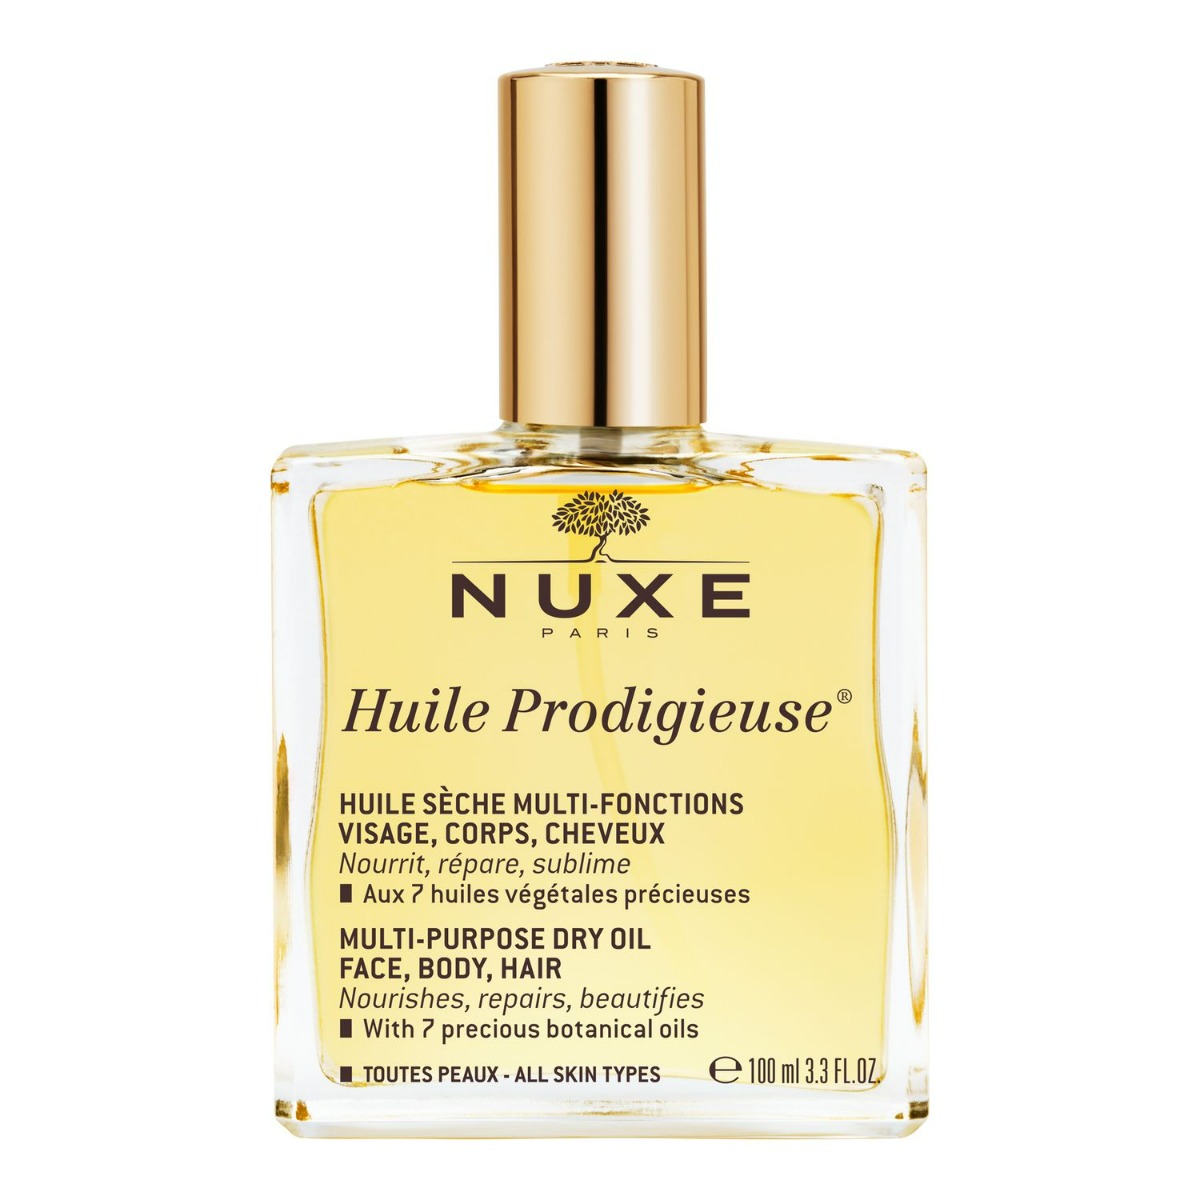 Nuxe Nuxe Huile Prodigieuse suchy olejek do pielęgnacji twarzy, ciała i włosów 100 ml [Nowa formuła] 7068717